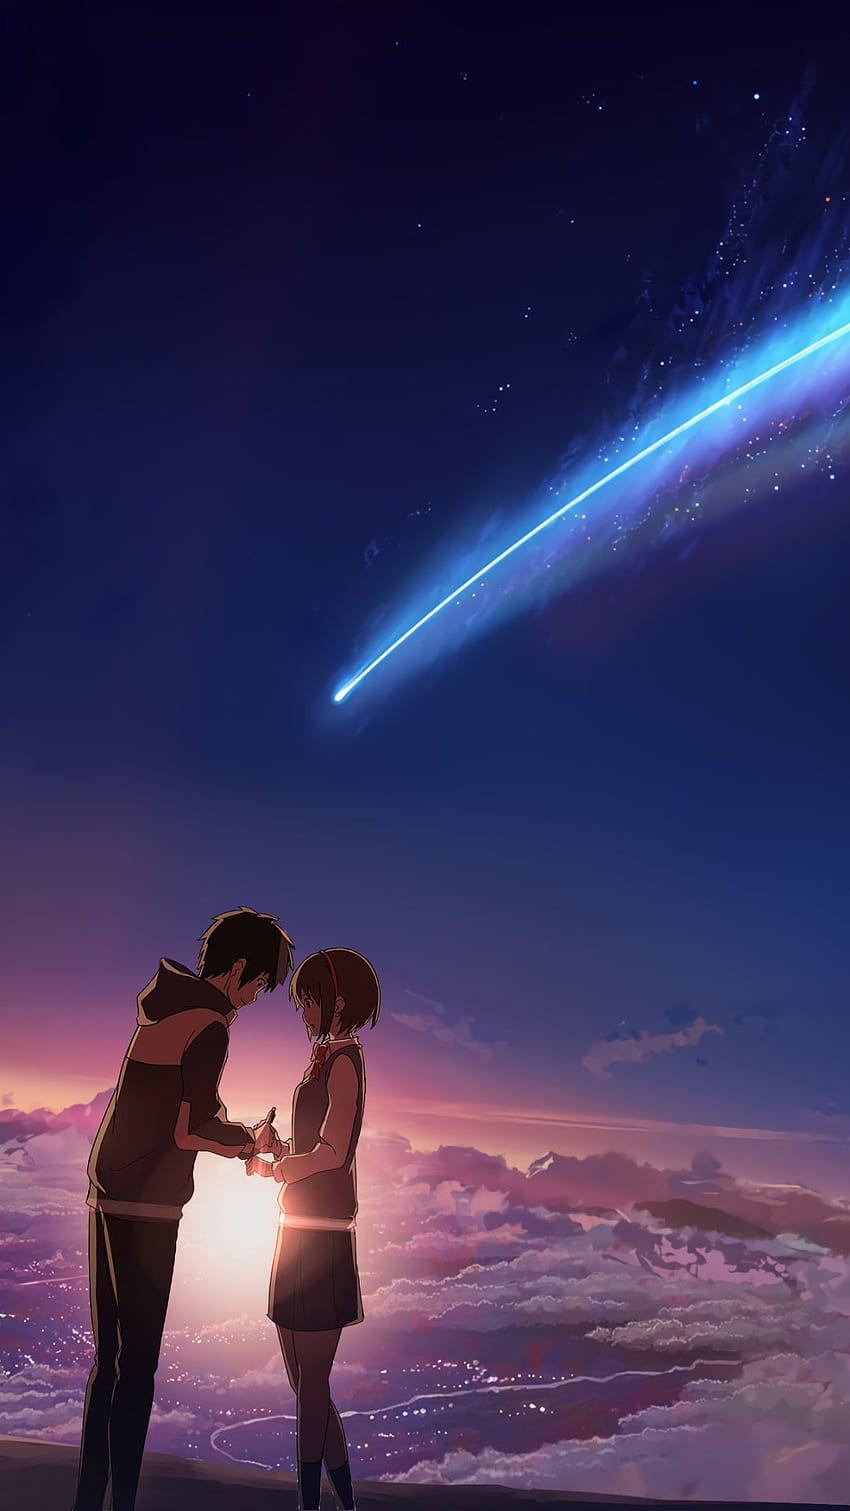 Hình Ảnh Your Name 2024: Your Name là một trong những bộ phim anime nổi tiếng và làm mưa làm gió trên toàn thế giới. Và bây giờ, hình ảnh các nhân vật chính trong bộ phim cũng được cập nhật đầy đủ và sắc nét hơn trong phiên bản